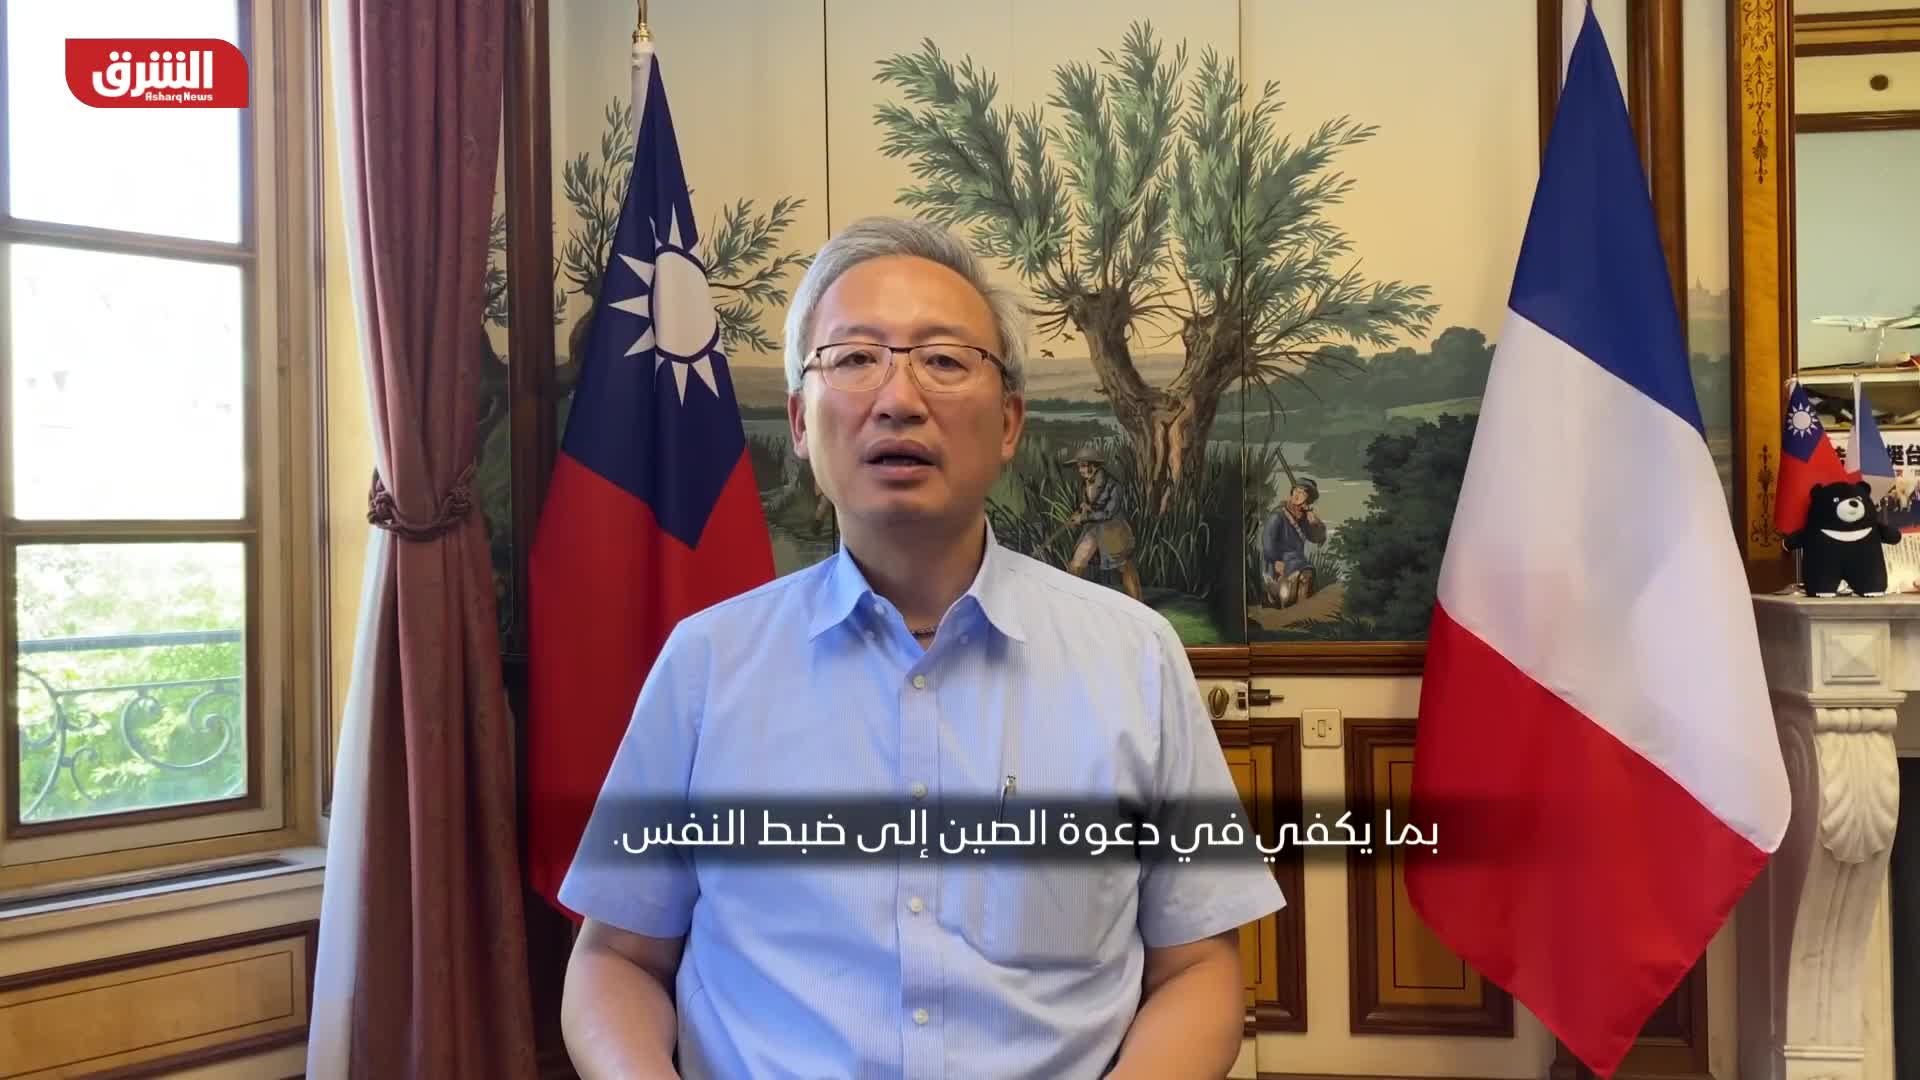 ممثل تايوان لدى فرنسا يستبعد خيار هجوم صيني وشيك